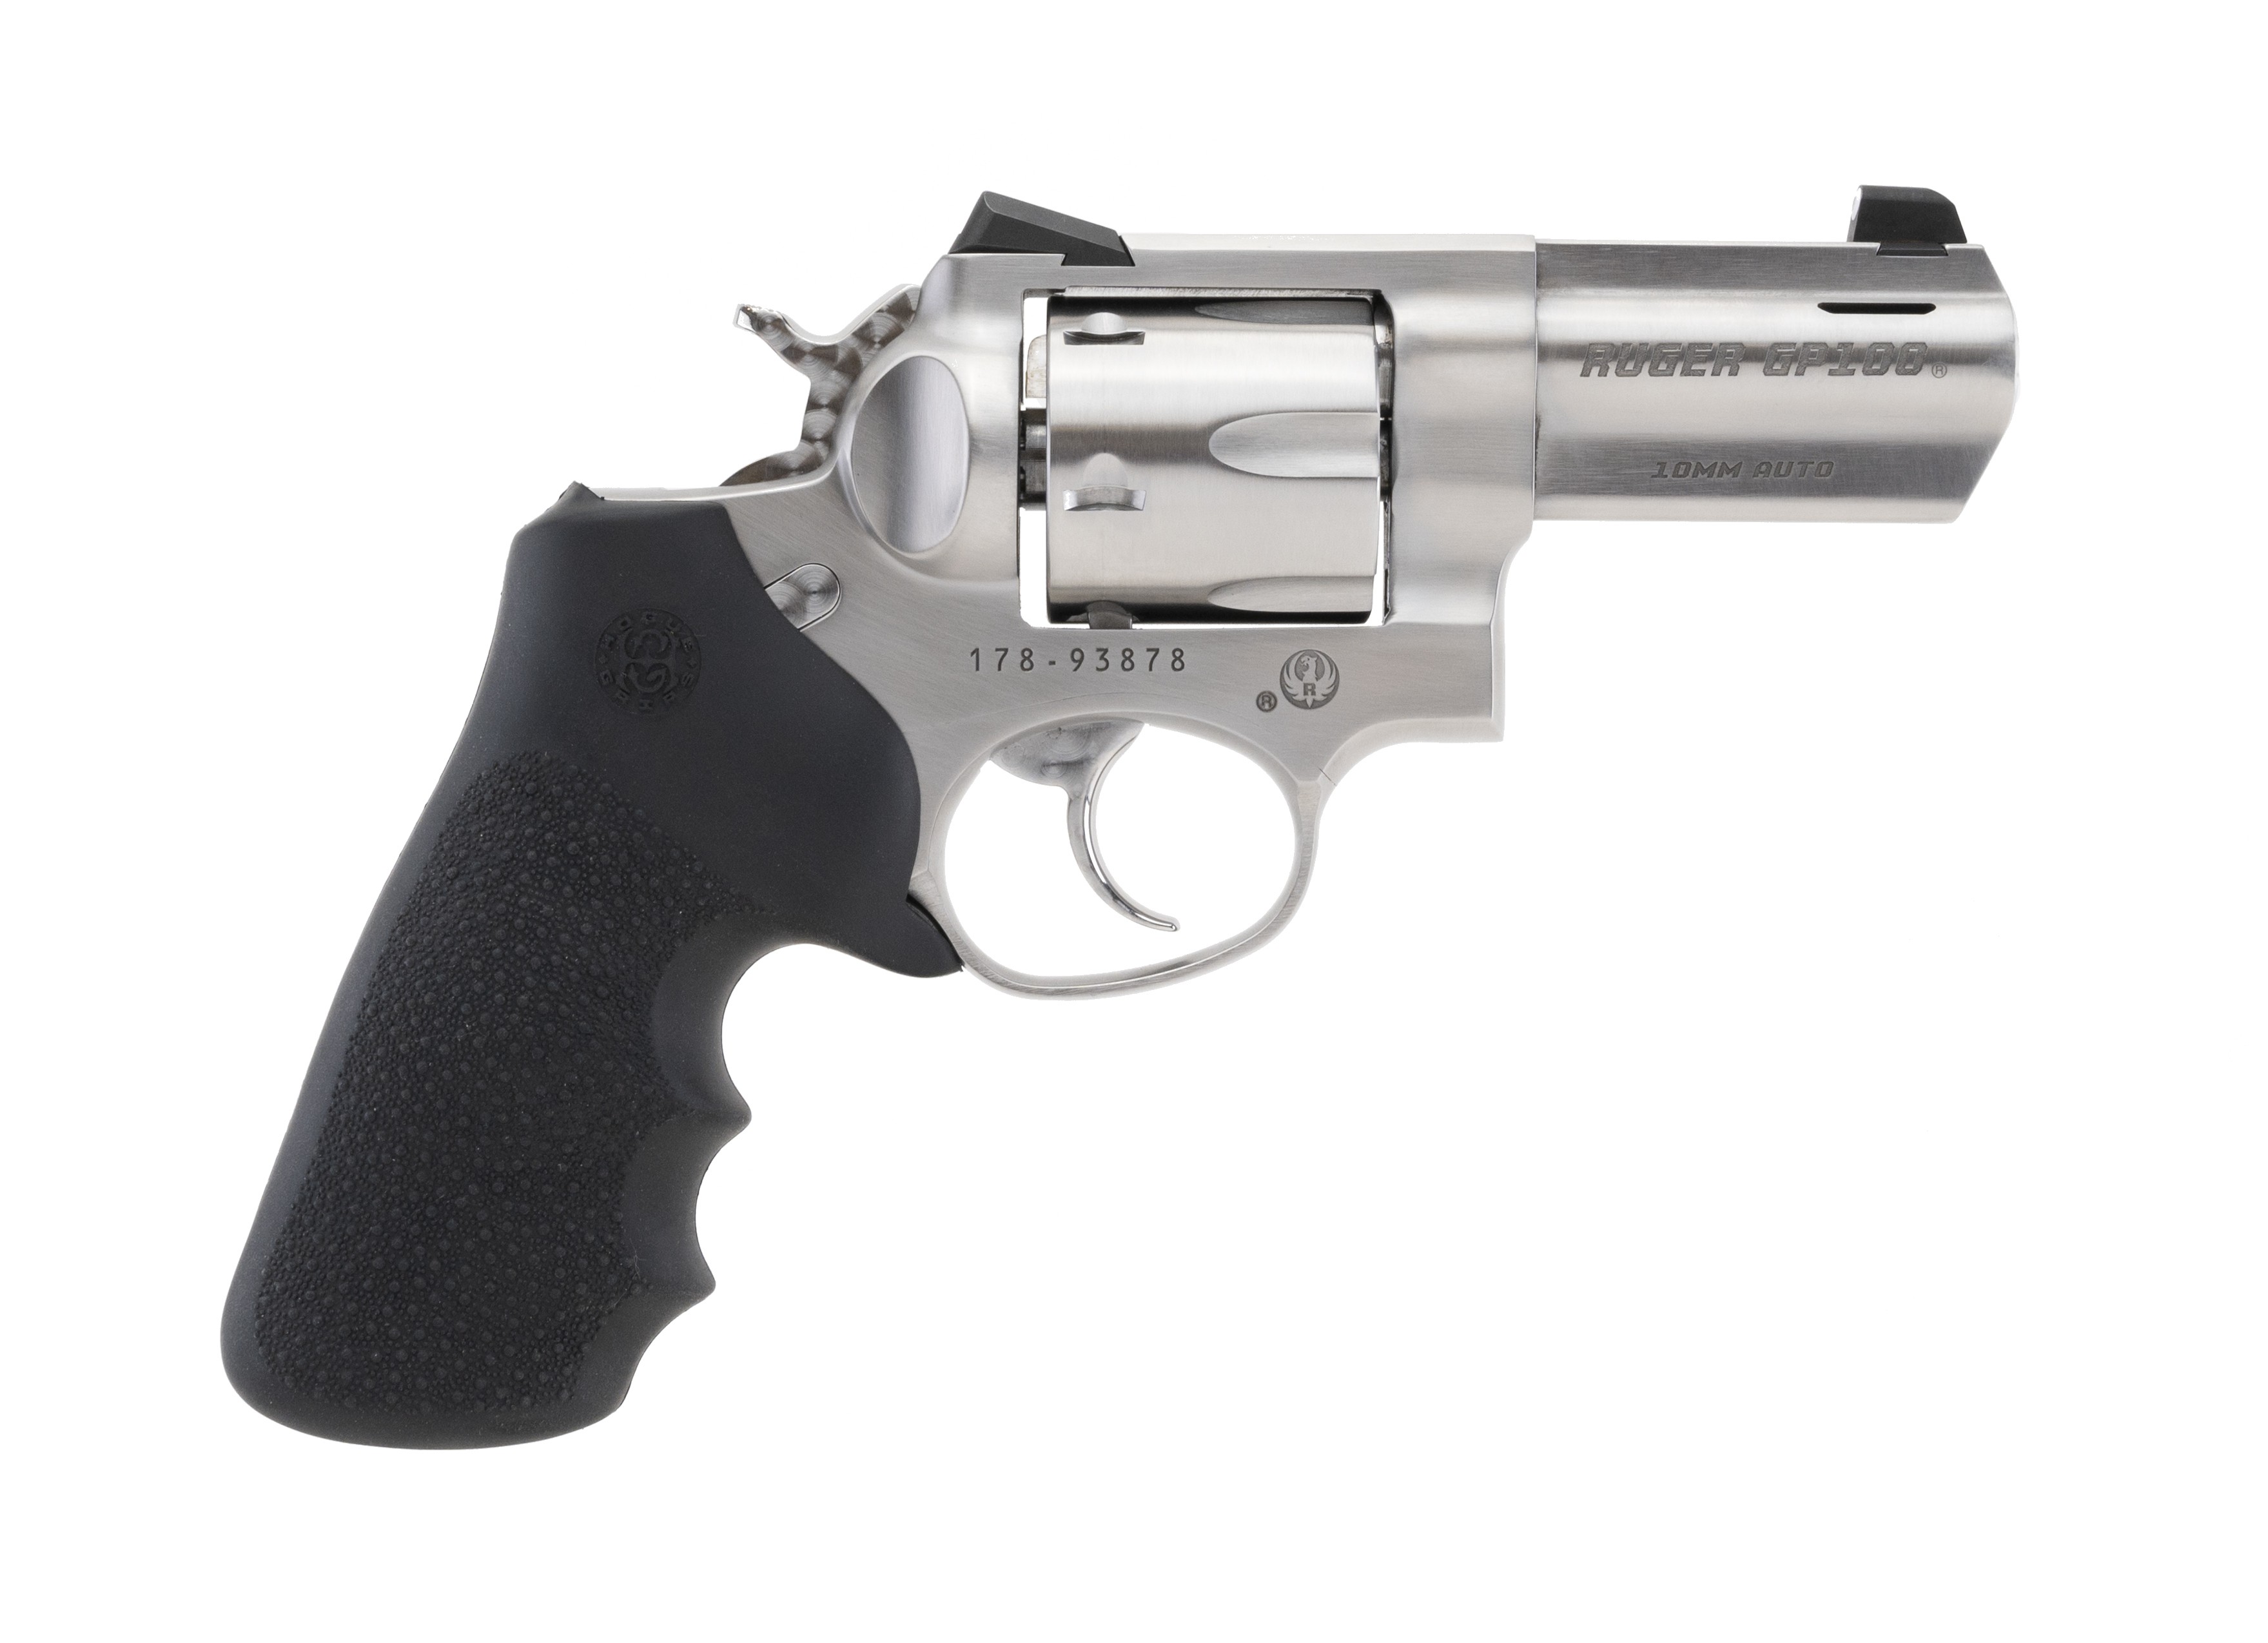 Custom Ruger GP100 10mm caliber revolver for sale.